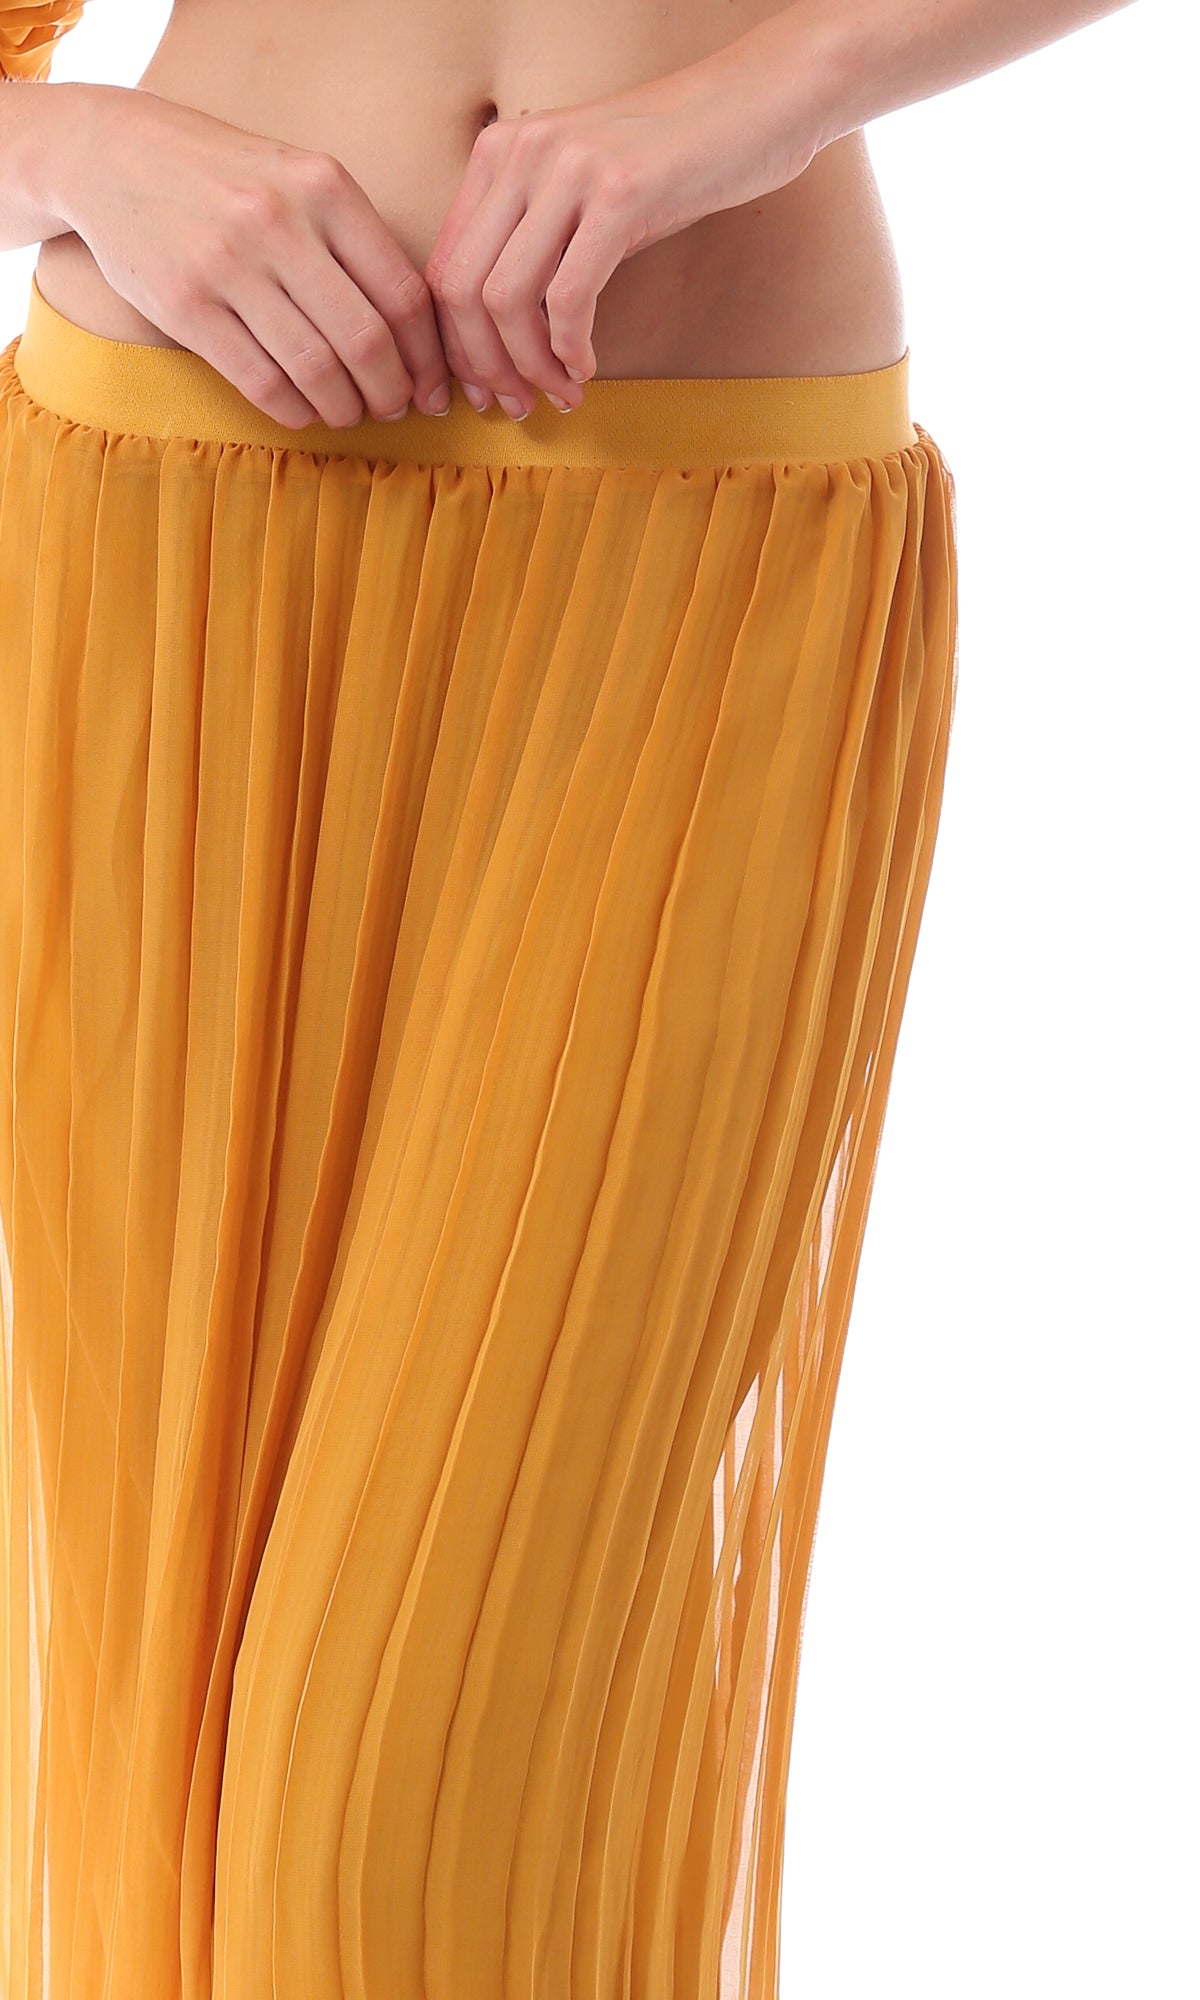 O166417 Mustard Slip On Summer Plisse Skirt